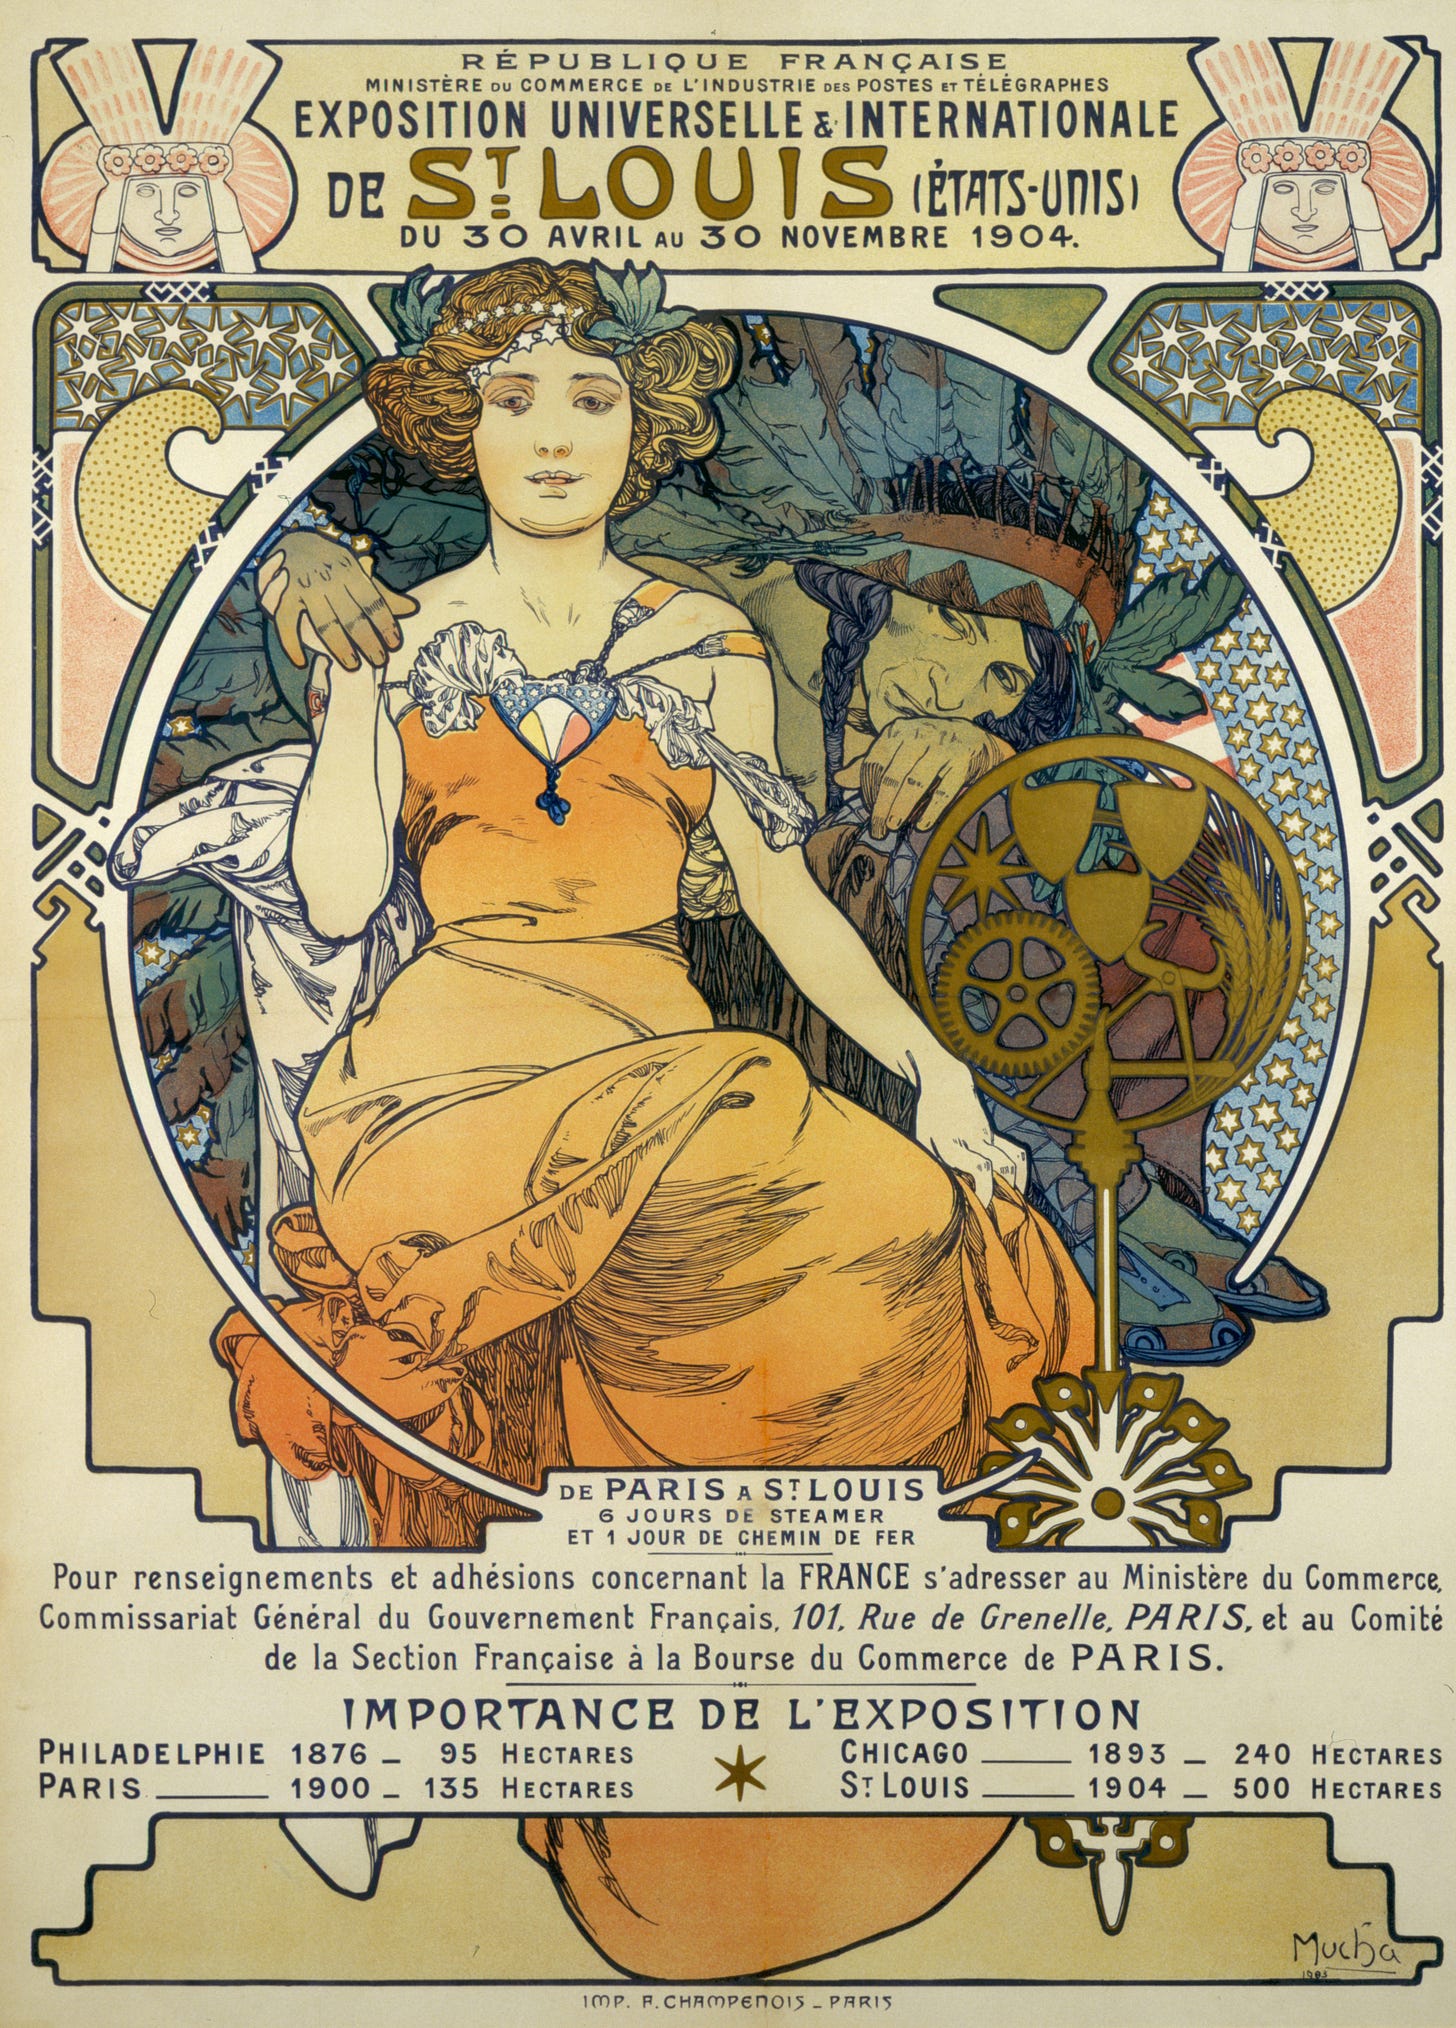 Exposition Universelles Et Internationale De St. Louis (Etats Unis) Du 30 Avril Au 30 Novembre (1903) by Alphonse Mucha